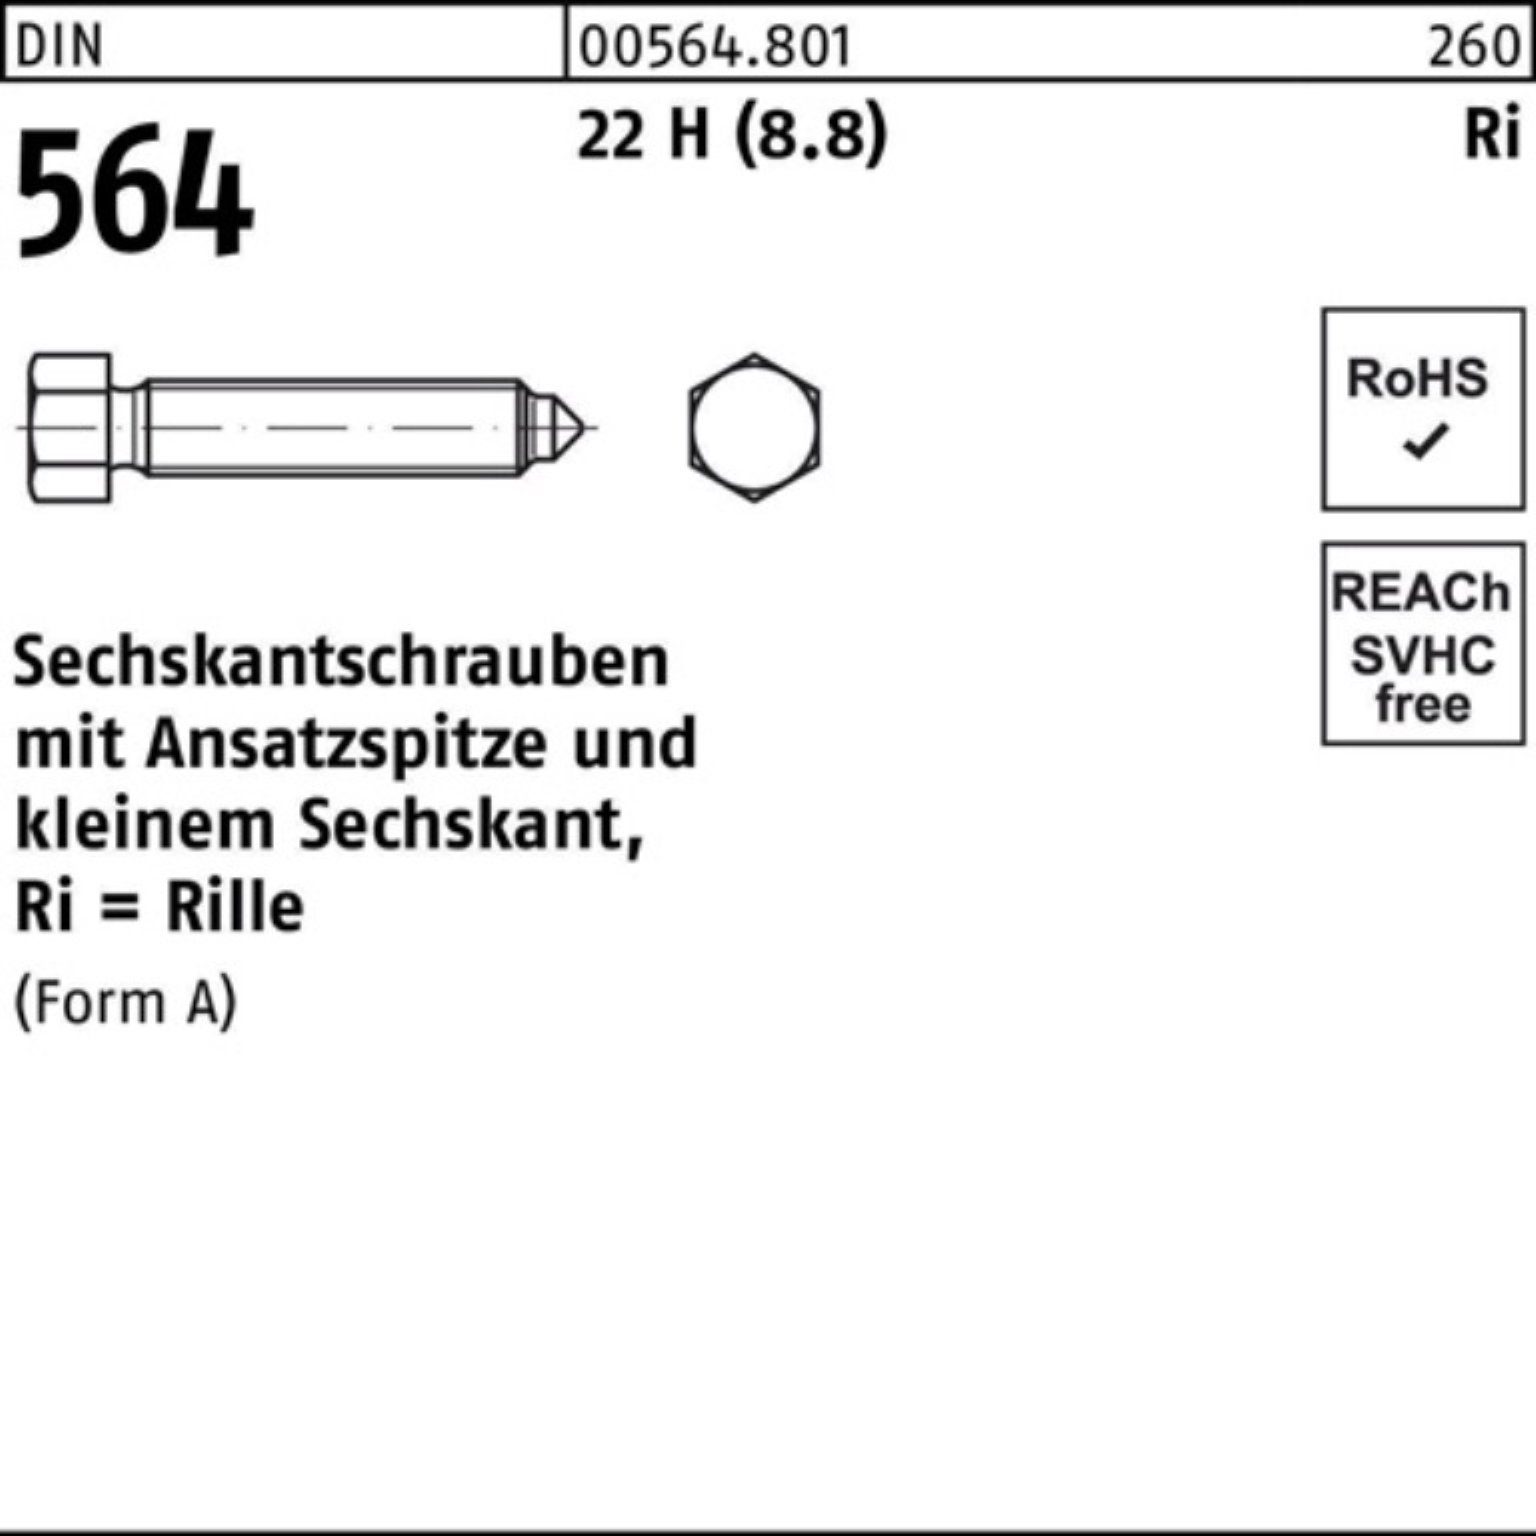 Reyher Sechskantschraube 100er Pack Sechskantschraube DIN 564 Ansatzspitze AM 6x 20 22 H (8.8)